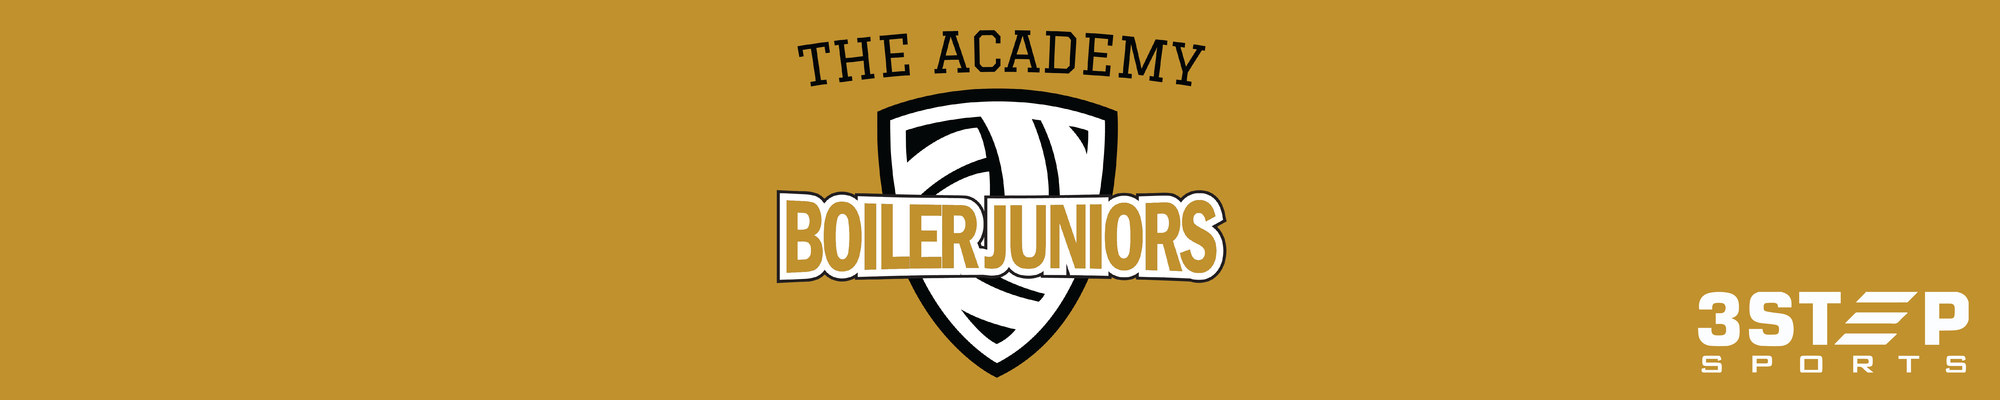 Academy Boiler Juniors